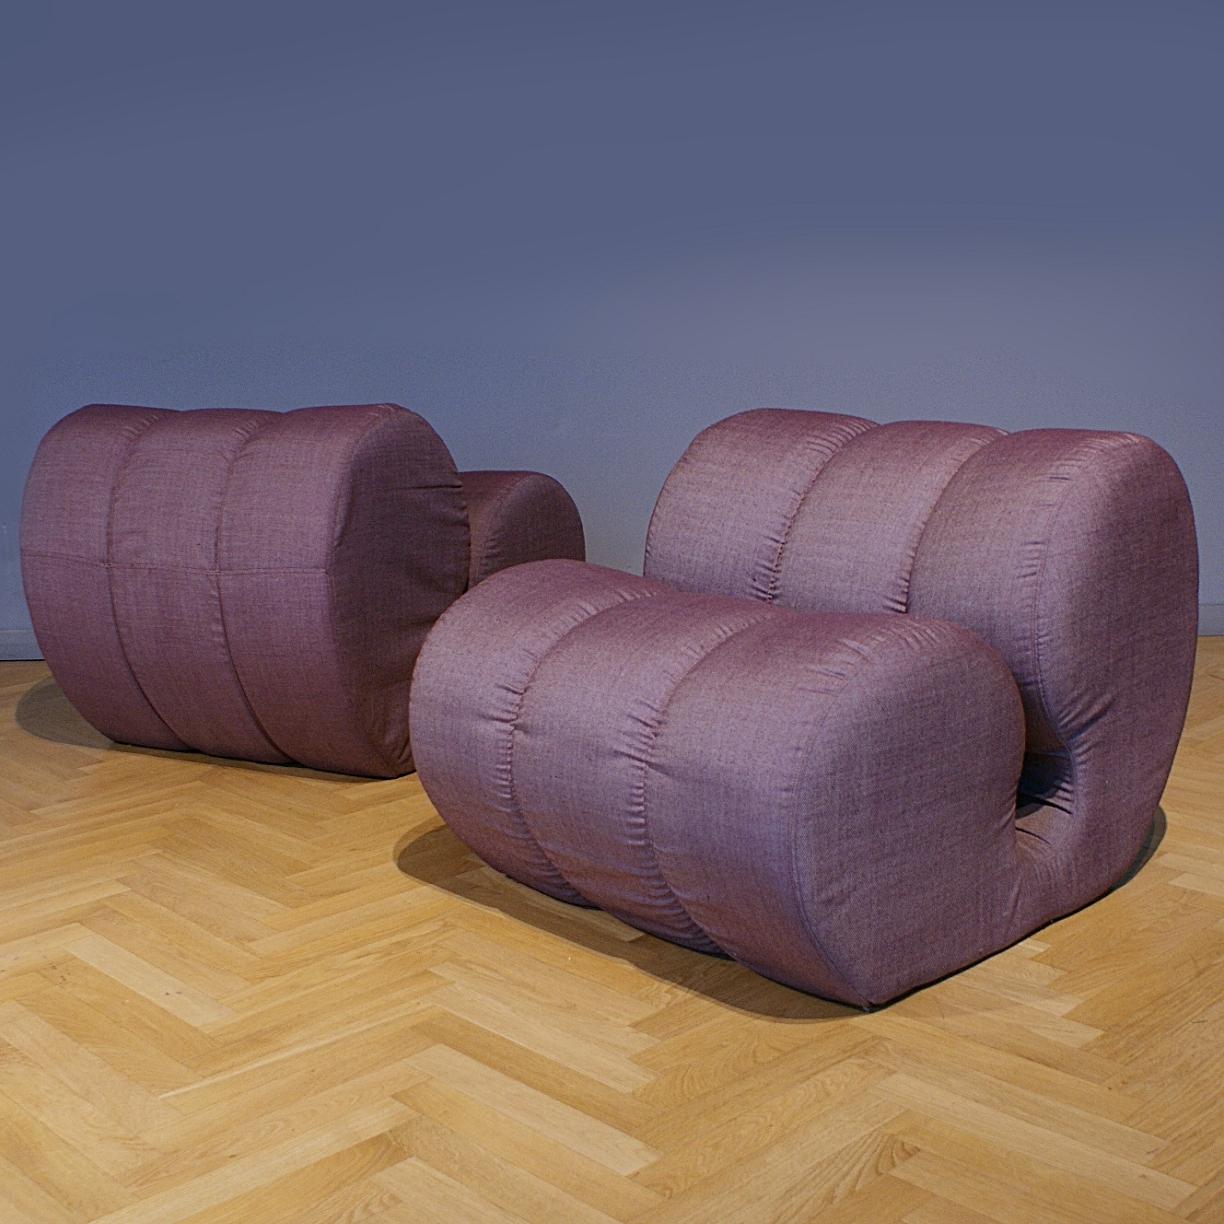 Außergewöhnliche italienische Loungesessel aus dem Space Age im Stil von Mario Bellini. Das Gestell der Stühle ist mit einem abgerundeten, weichen Schaumstoff überzogen und mit einem sehr feinen italienischen Stoff gepolstert. Wir lieben die